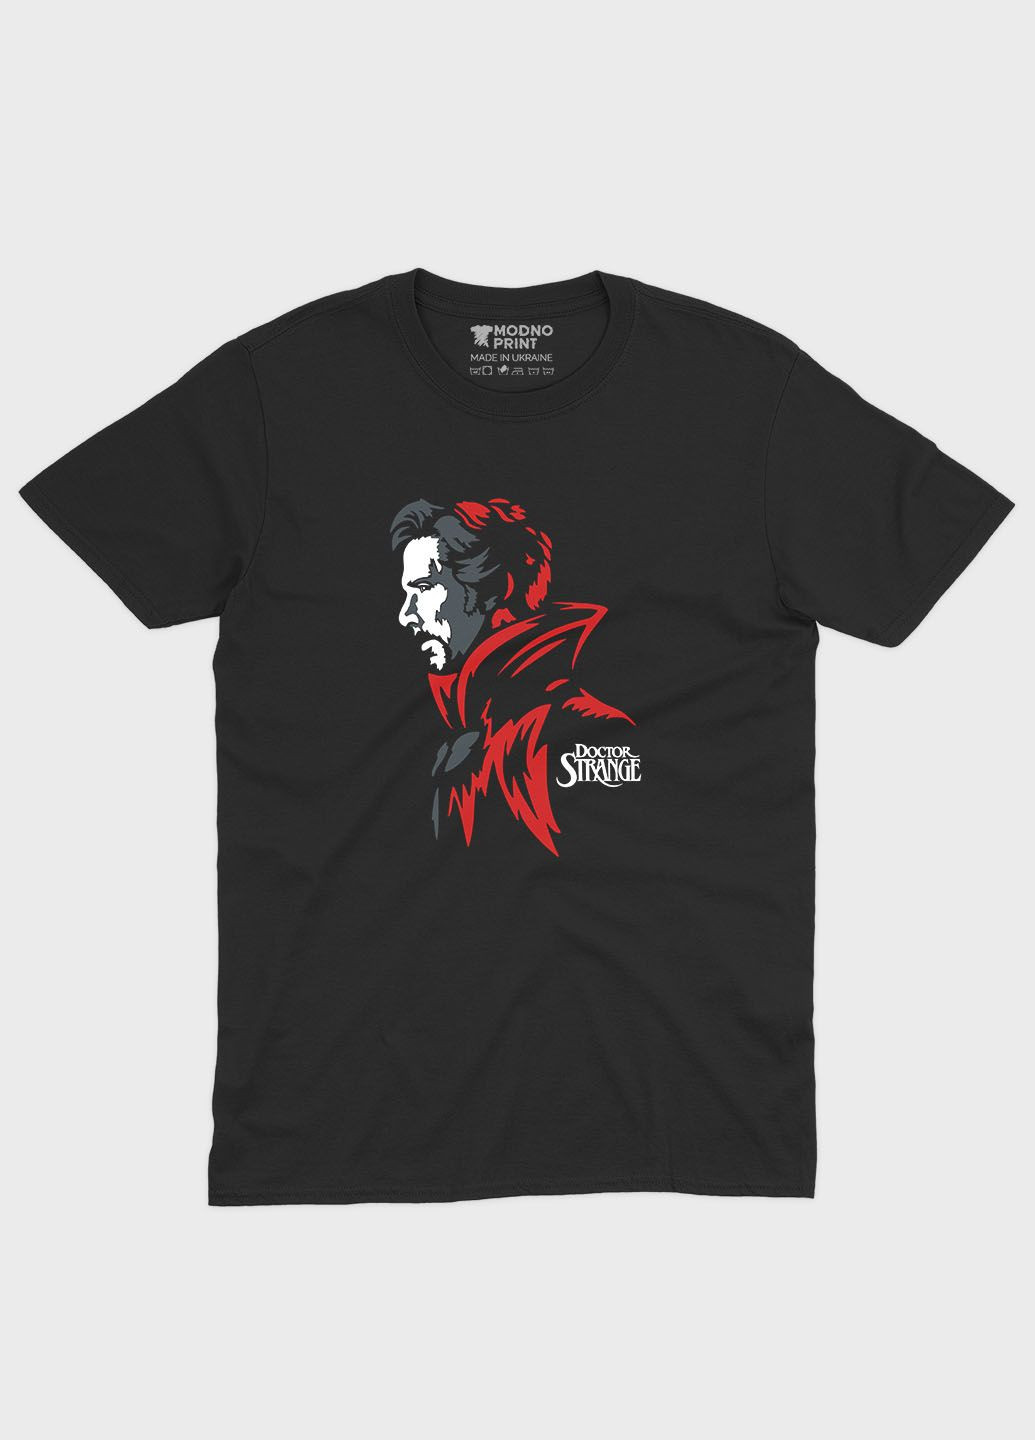 Черная демисезонная футболка для мальчика с принтом супергероя - доктор стрэндж (ts001-1-bl-006-020-001-b) Modno